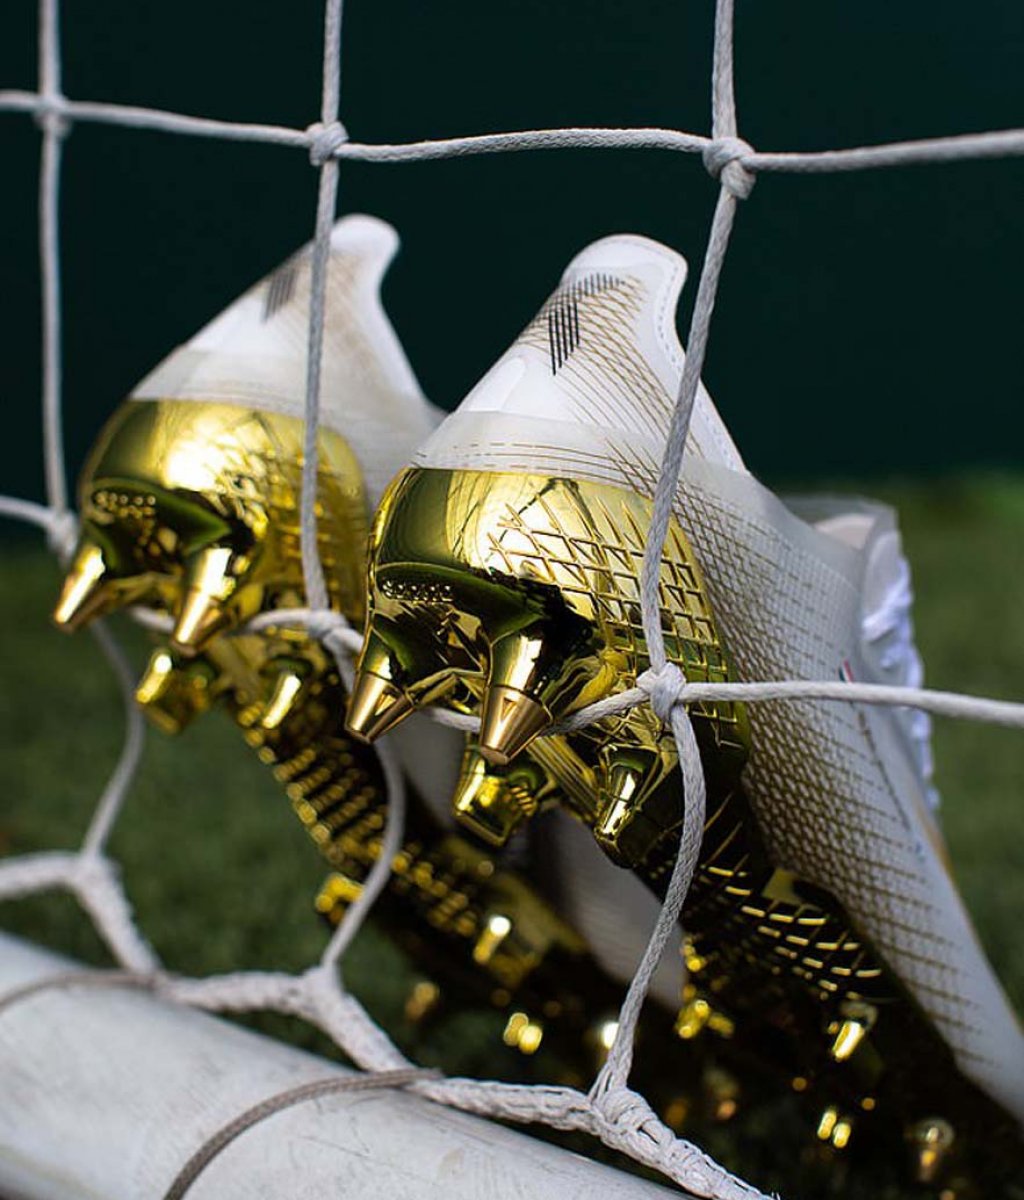 Обяснено: Защо adidas обу Салах със "златни" обувки за мача с Аякс?